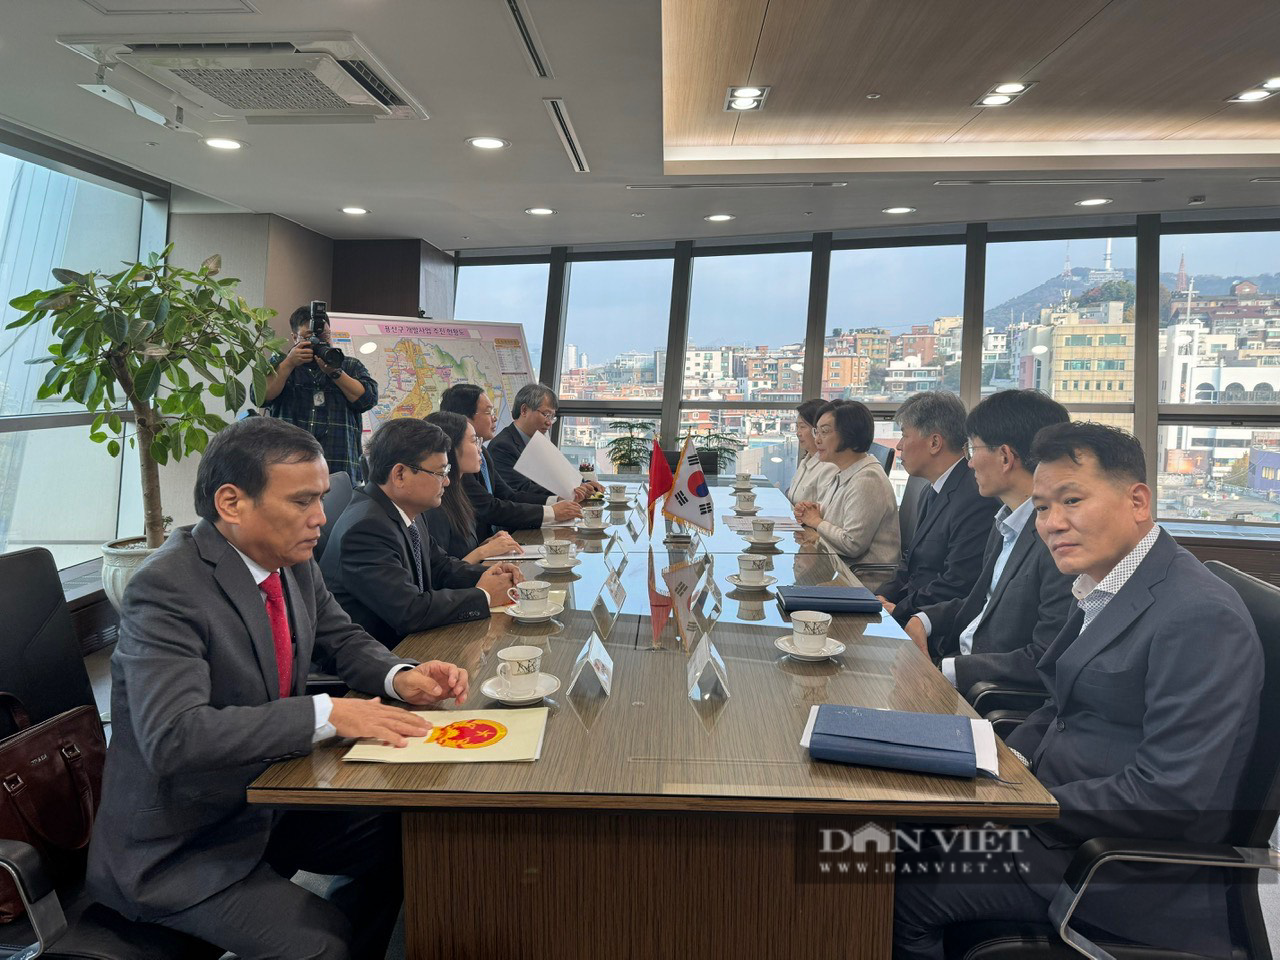 Bí thư Bình Định Hồ Quốc Dũng, Phó Chủ tịch tỉnh Nguyễn Tự Công Hoàng đi Hàn Quốc kêu gọi đầu tư - Ảnh 1.